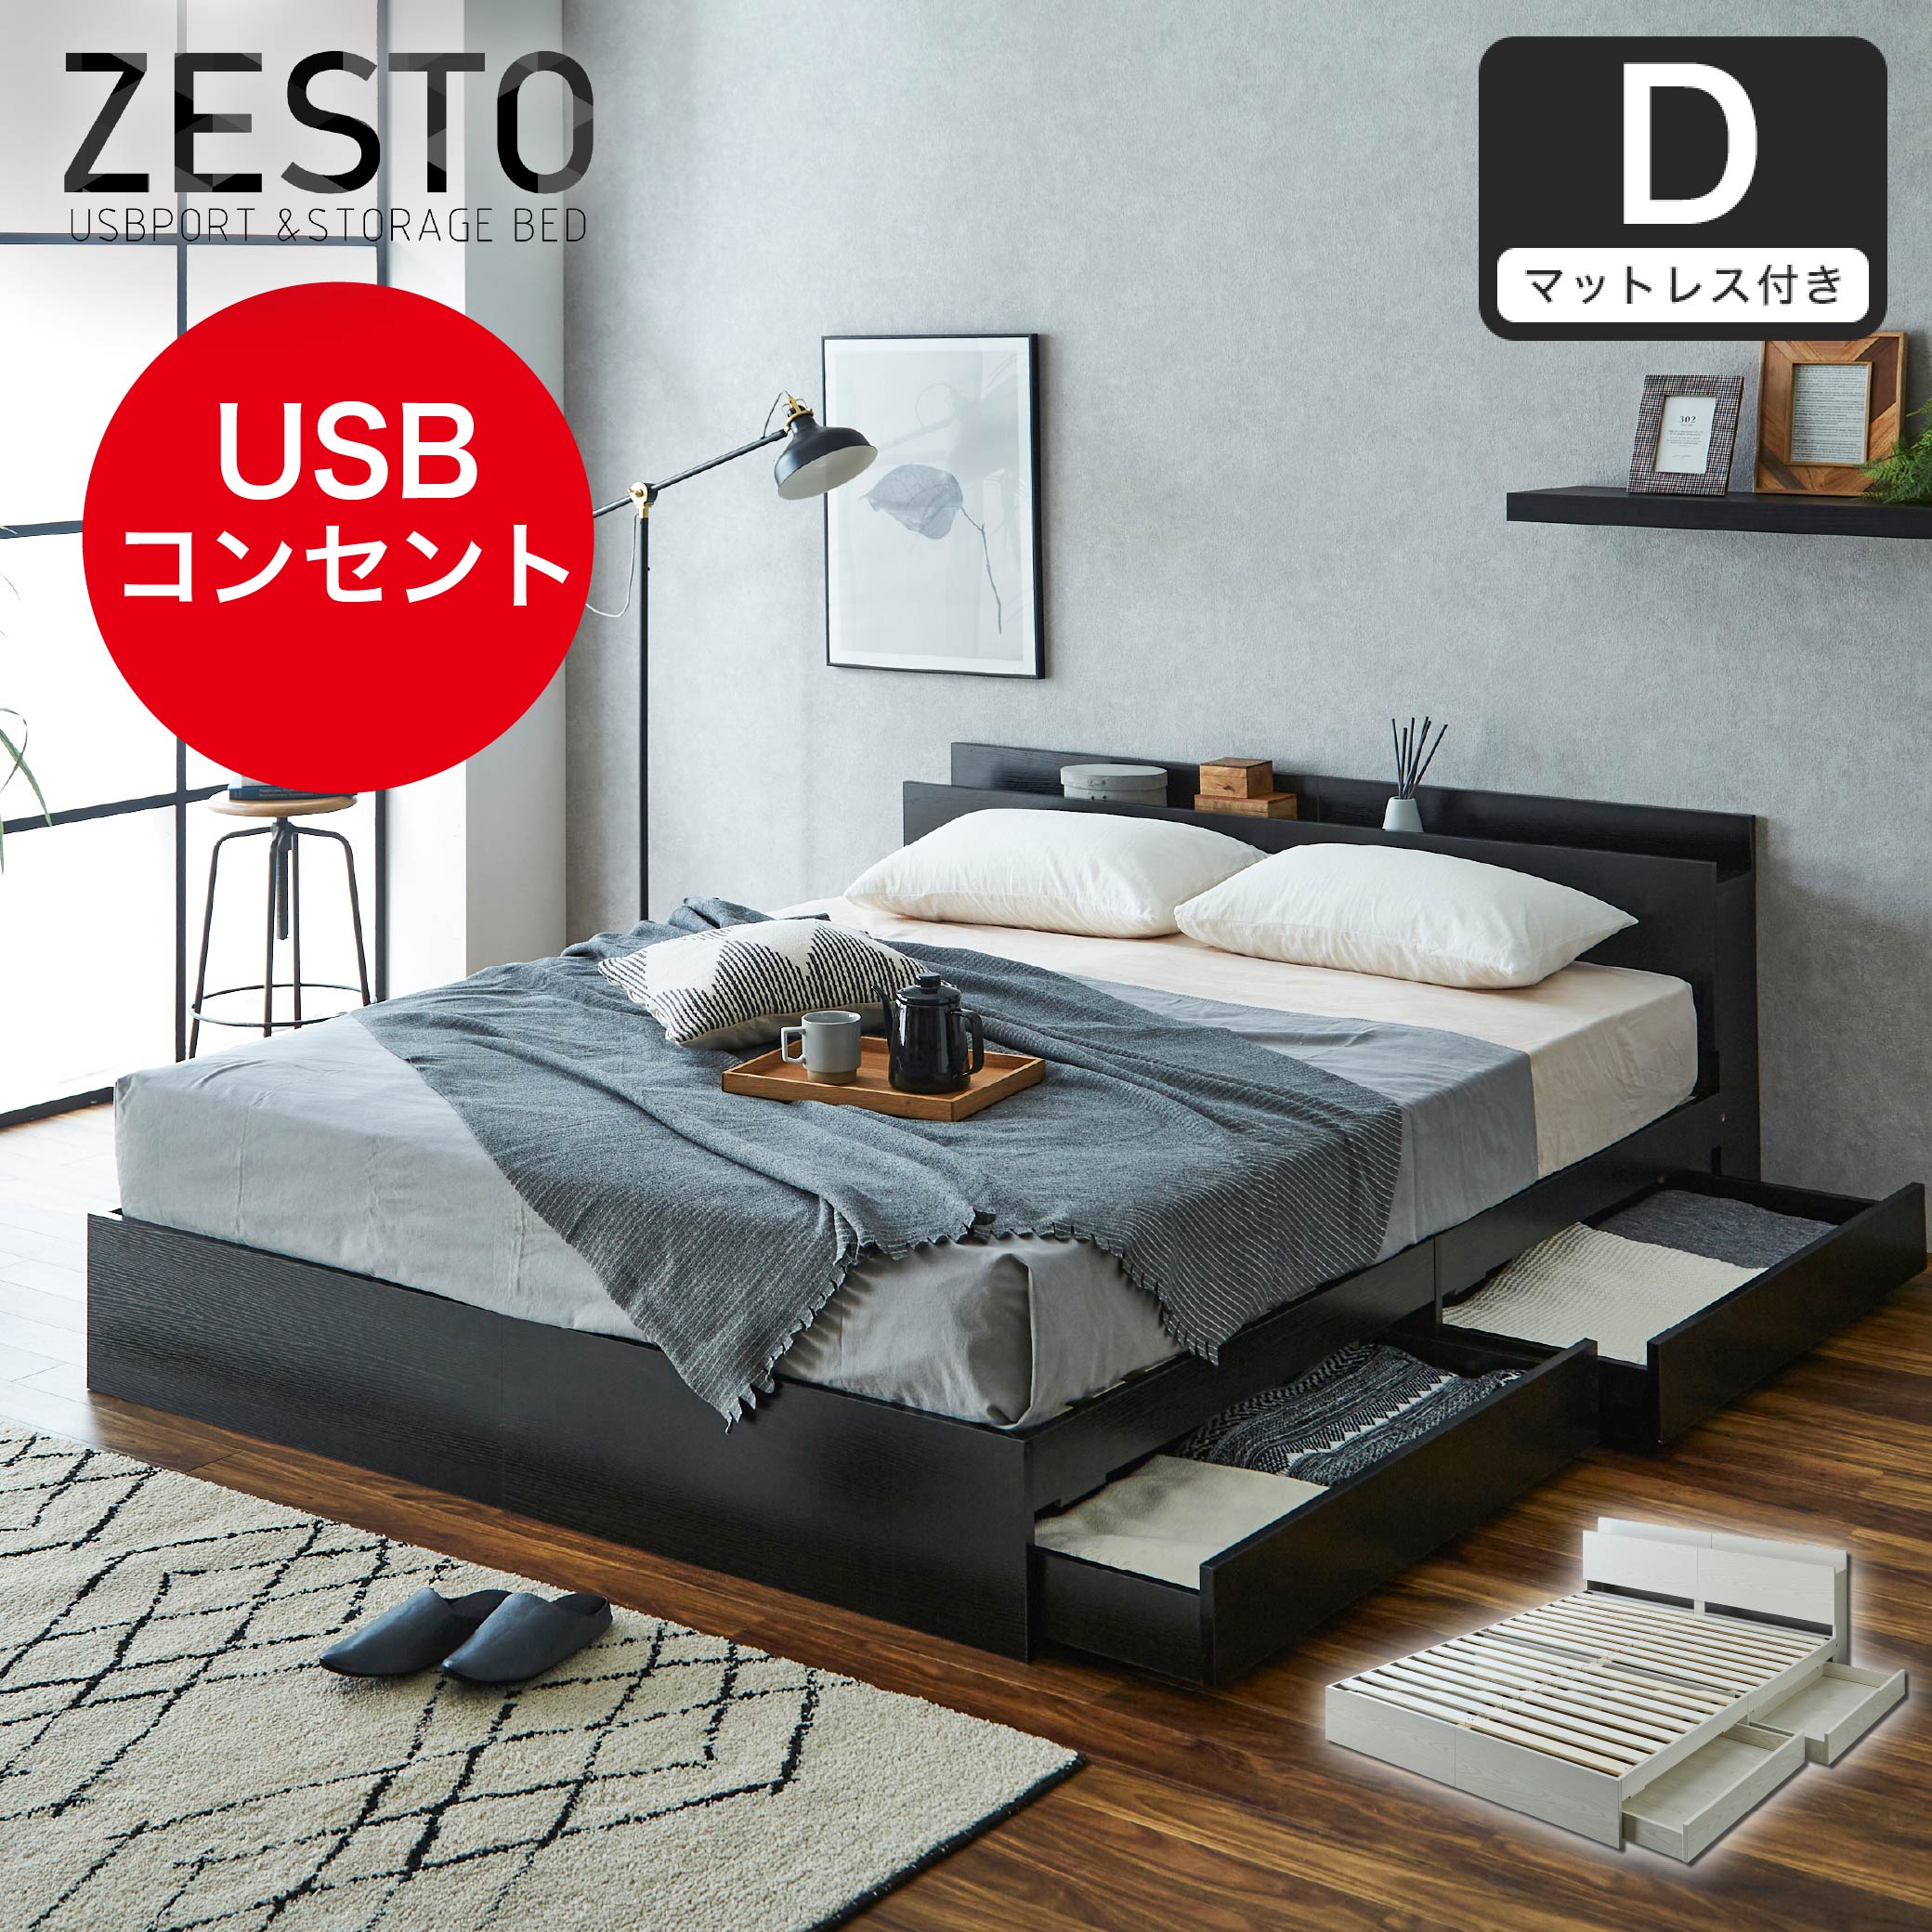 【ポイント10倍】ベッド 収納 ダブルベッド マットレス付き 収納付き USBコンセント付き zesto ゼスト ダブル  高密度バリューポケットコイルマットレス付き すのこベッド 引き出し付きベッド zesto 木製ベッド